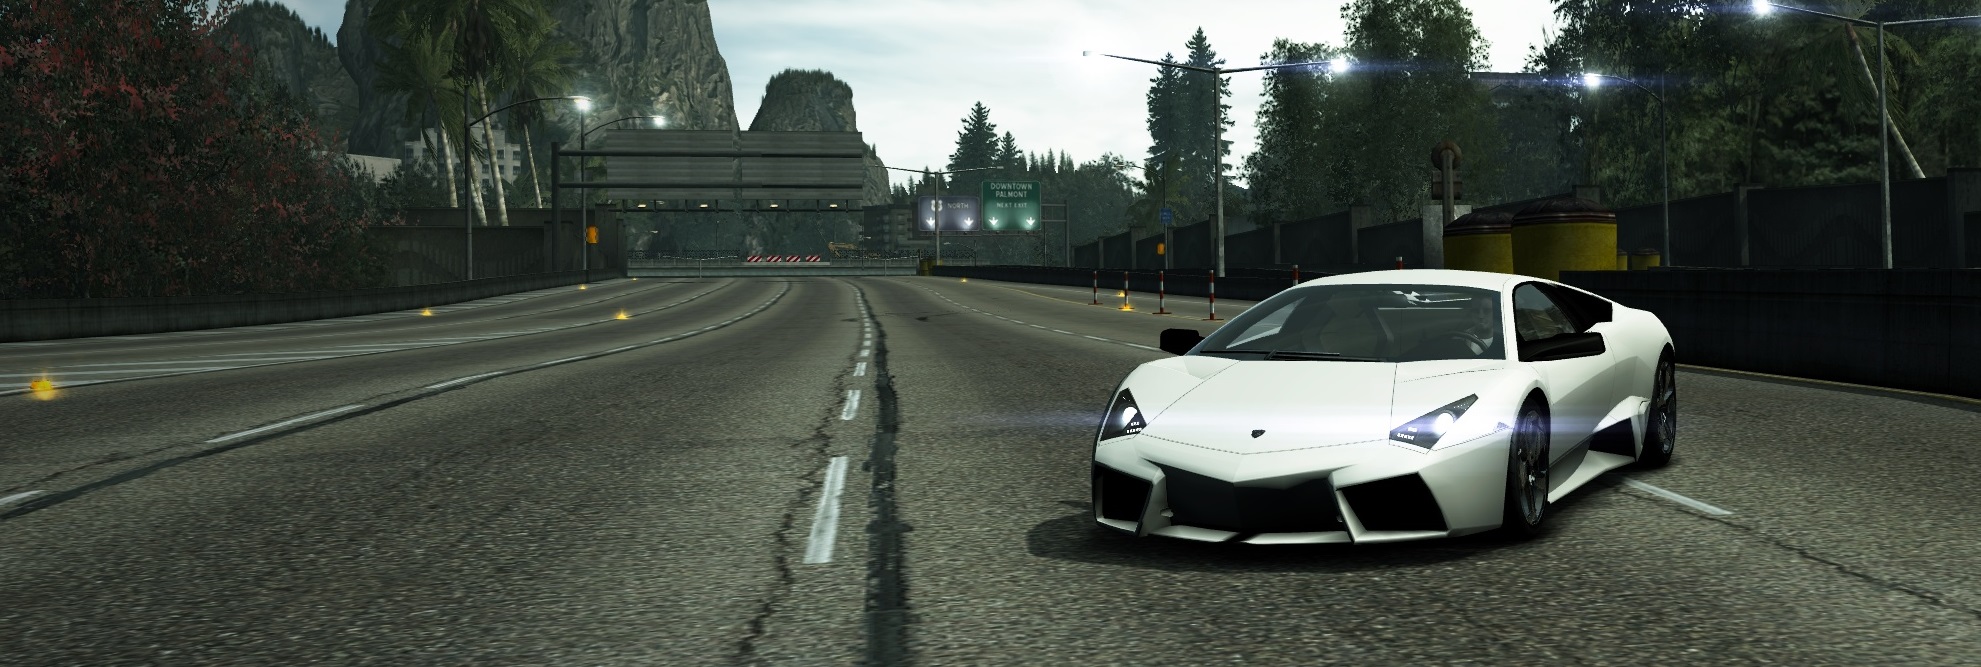 Auto con dinero del juego por el fin de semana: Lamborghini Reventón [13-02-2015] Lamborghini-reventon-igc-lto